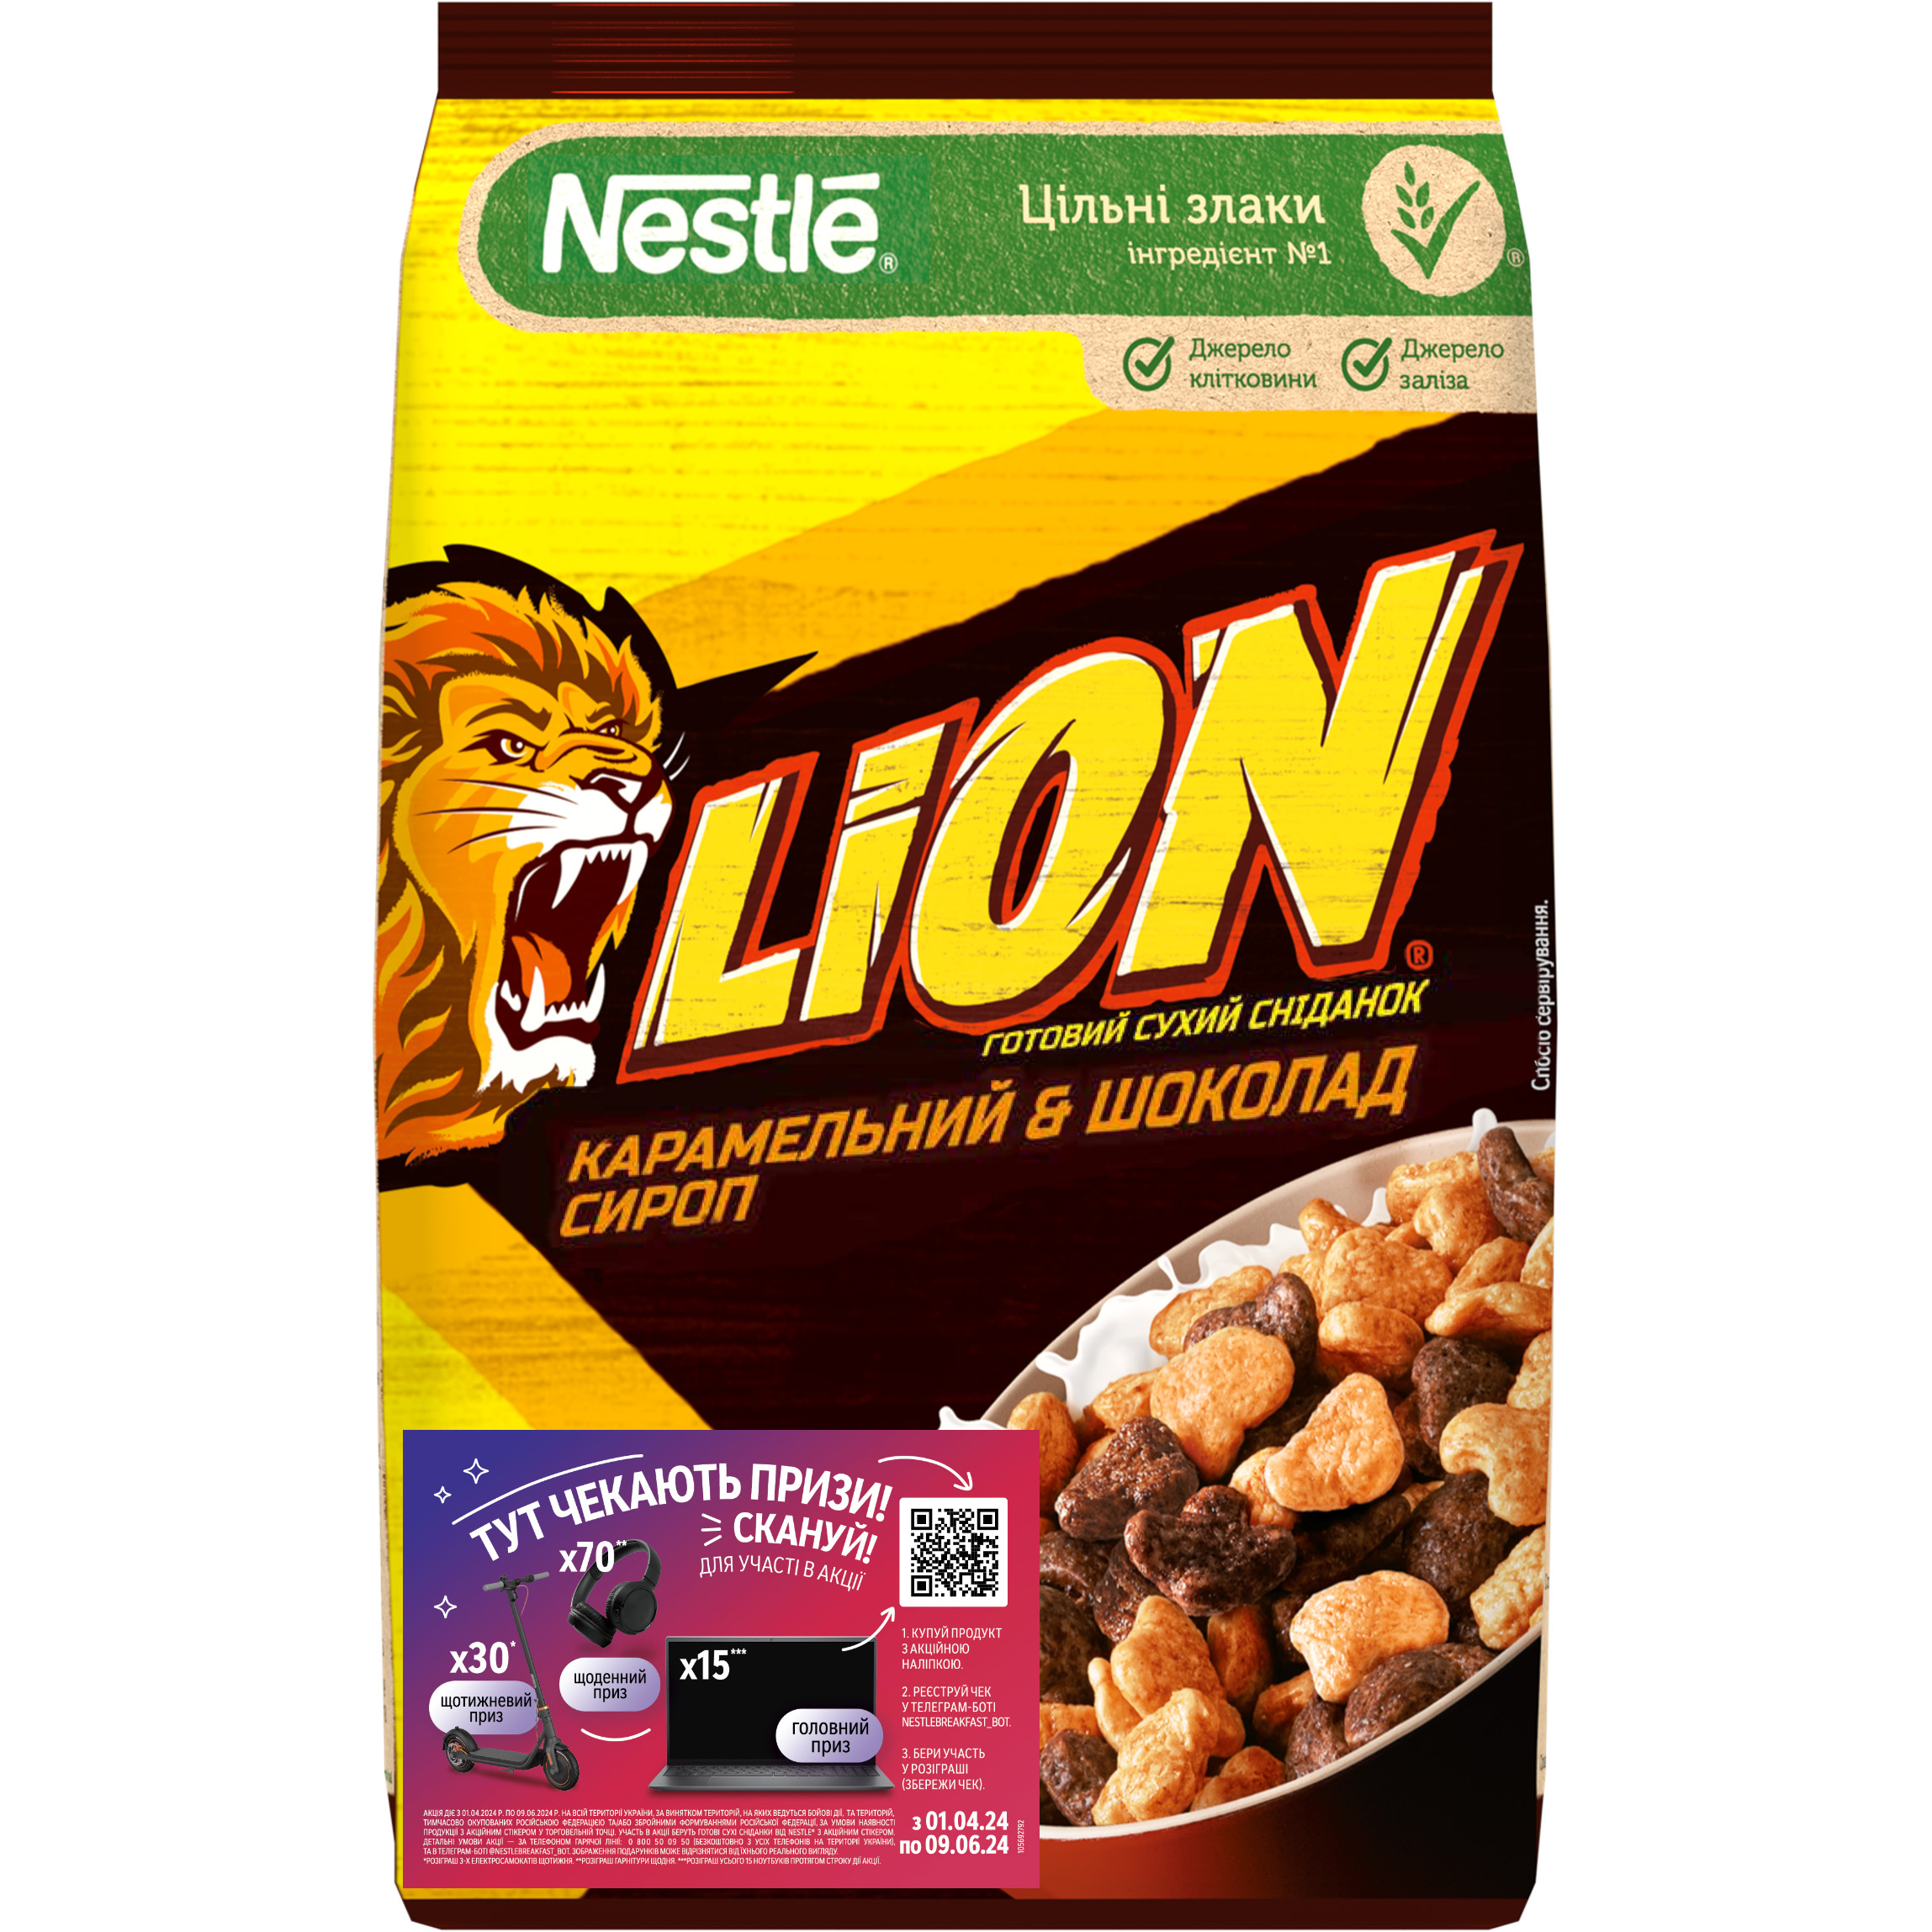 Готовый сухой завтрак Nestle Lion 375 г - фото 1